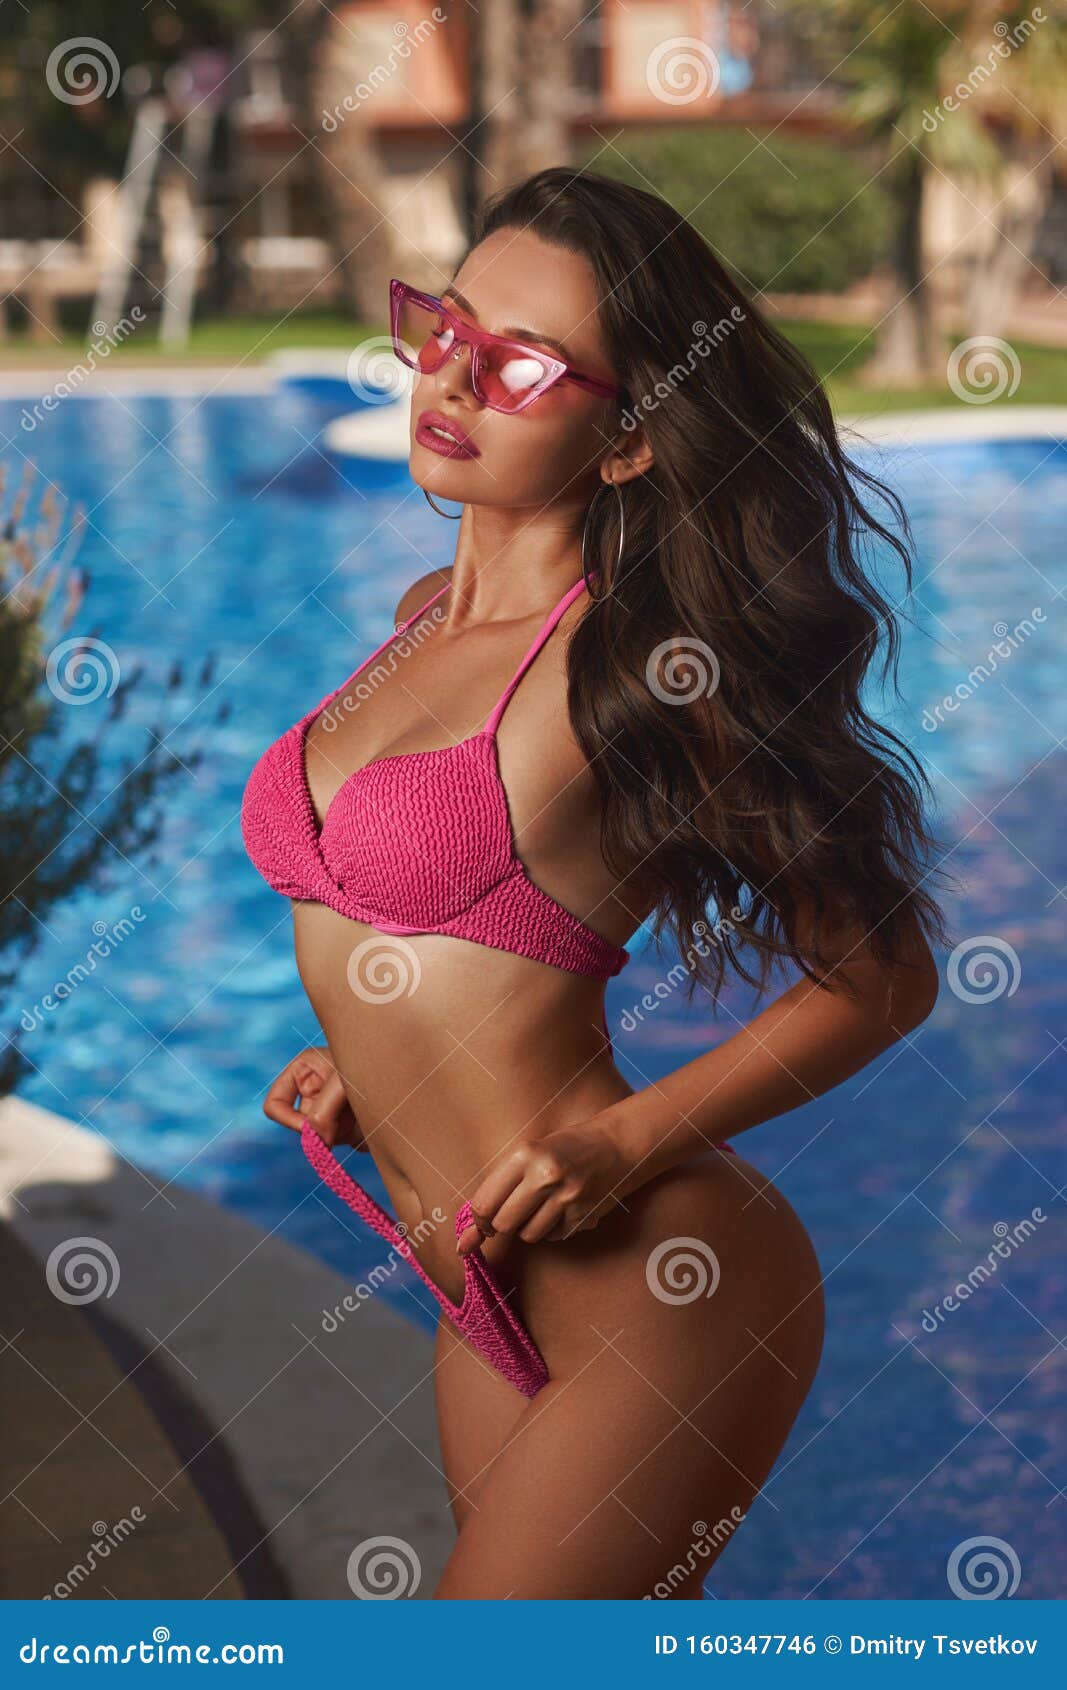 Girl in bikini near swimming pool Stock Photo by ©Dmitry_Tsvetkov 105568402